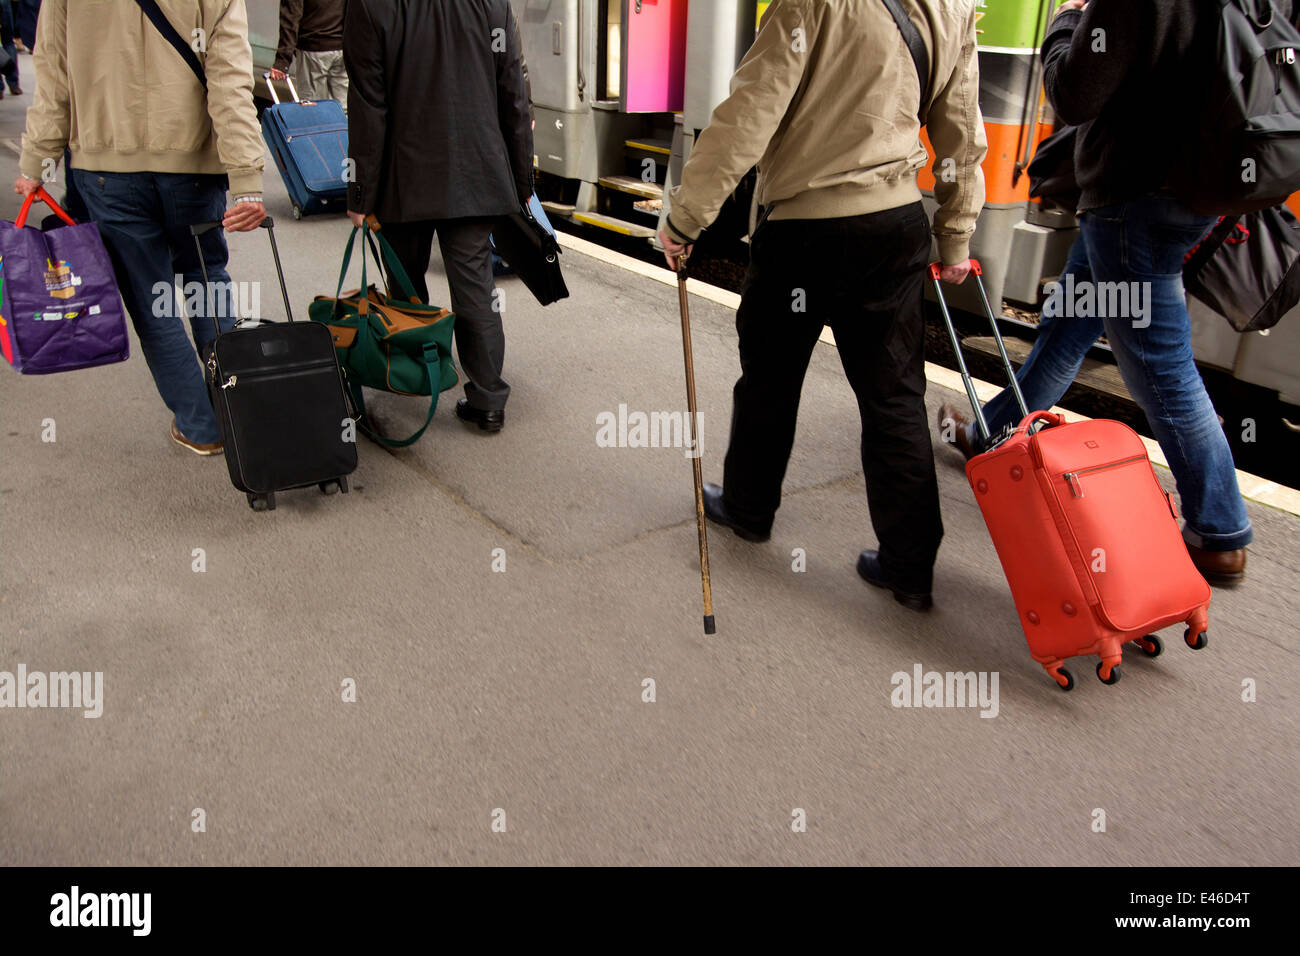 Los pensionistas yendo de vacaciones en una estación de tren Foto de stock